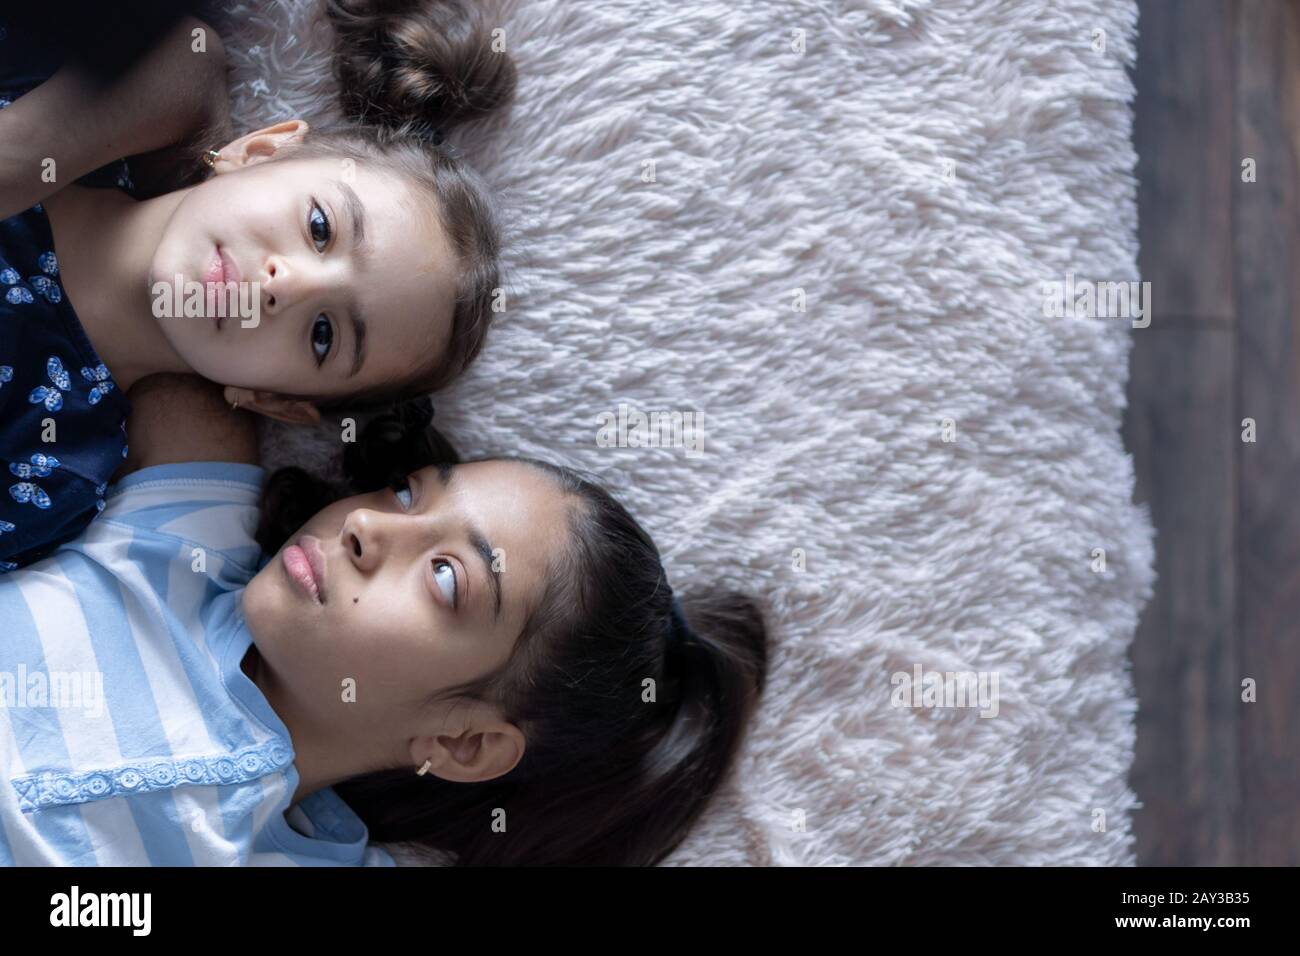 Due ragazze, sorelle, giovani del Medio Oriente sdraiati sul letto e guardate lo smartphone nei raggi del sole. Ragazze persiane sul letto con un telefono Foto Stock